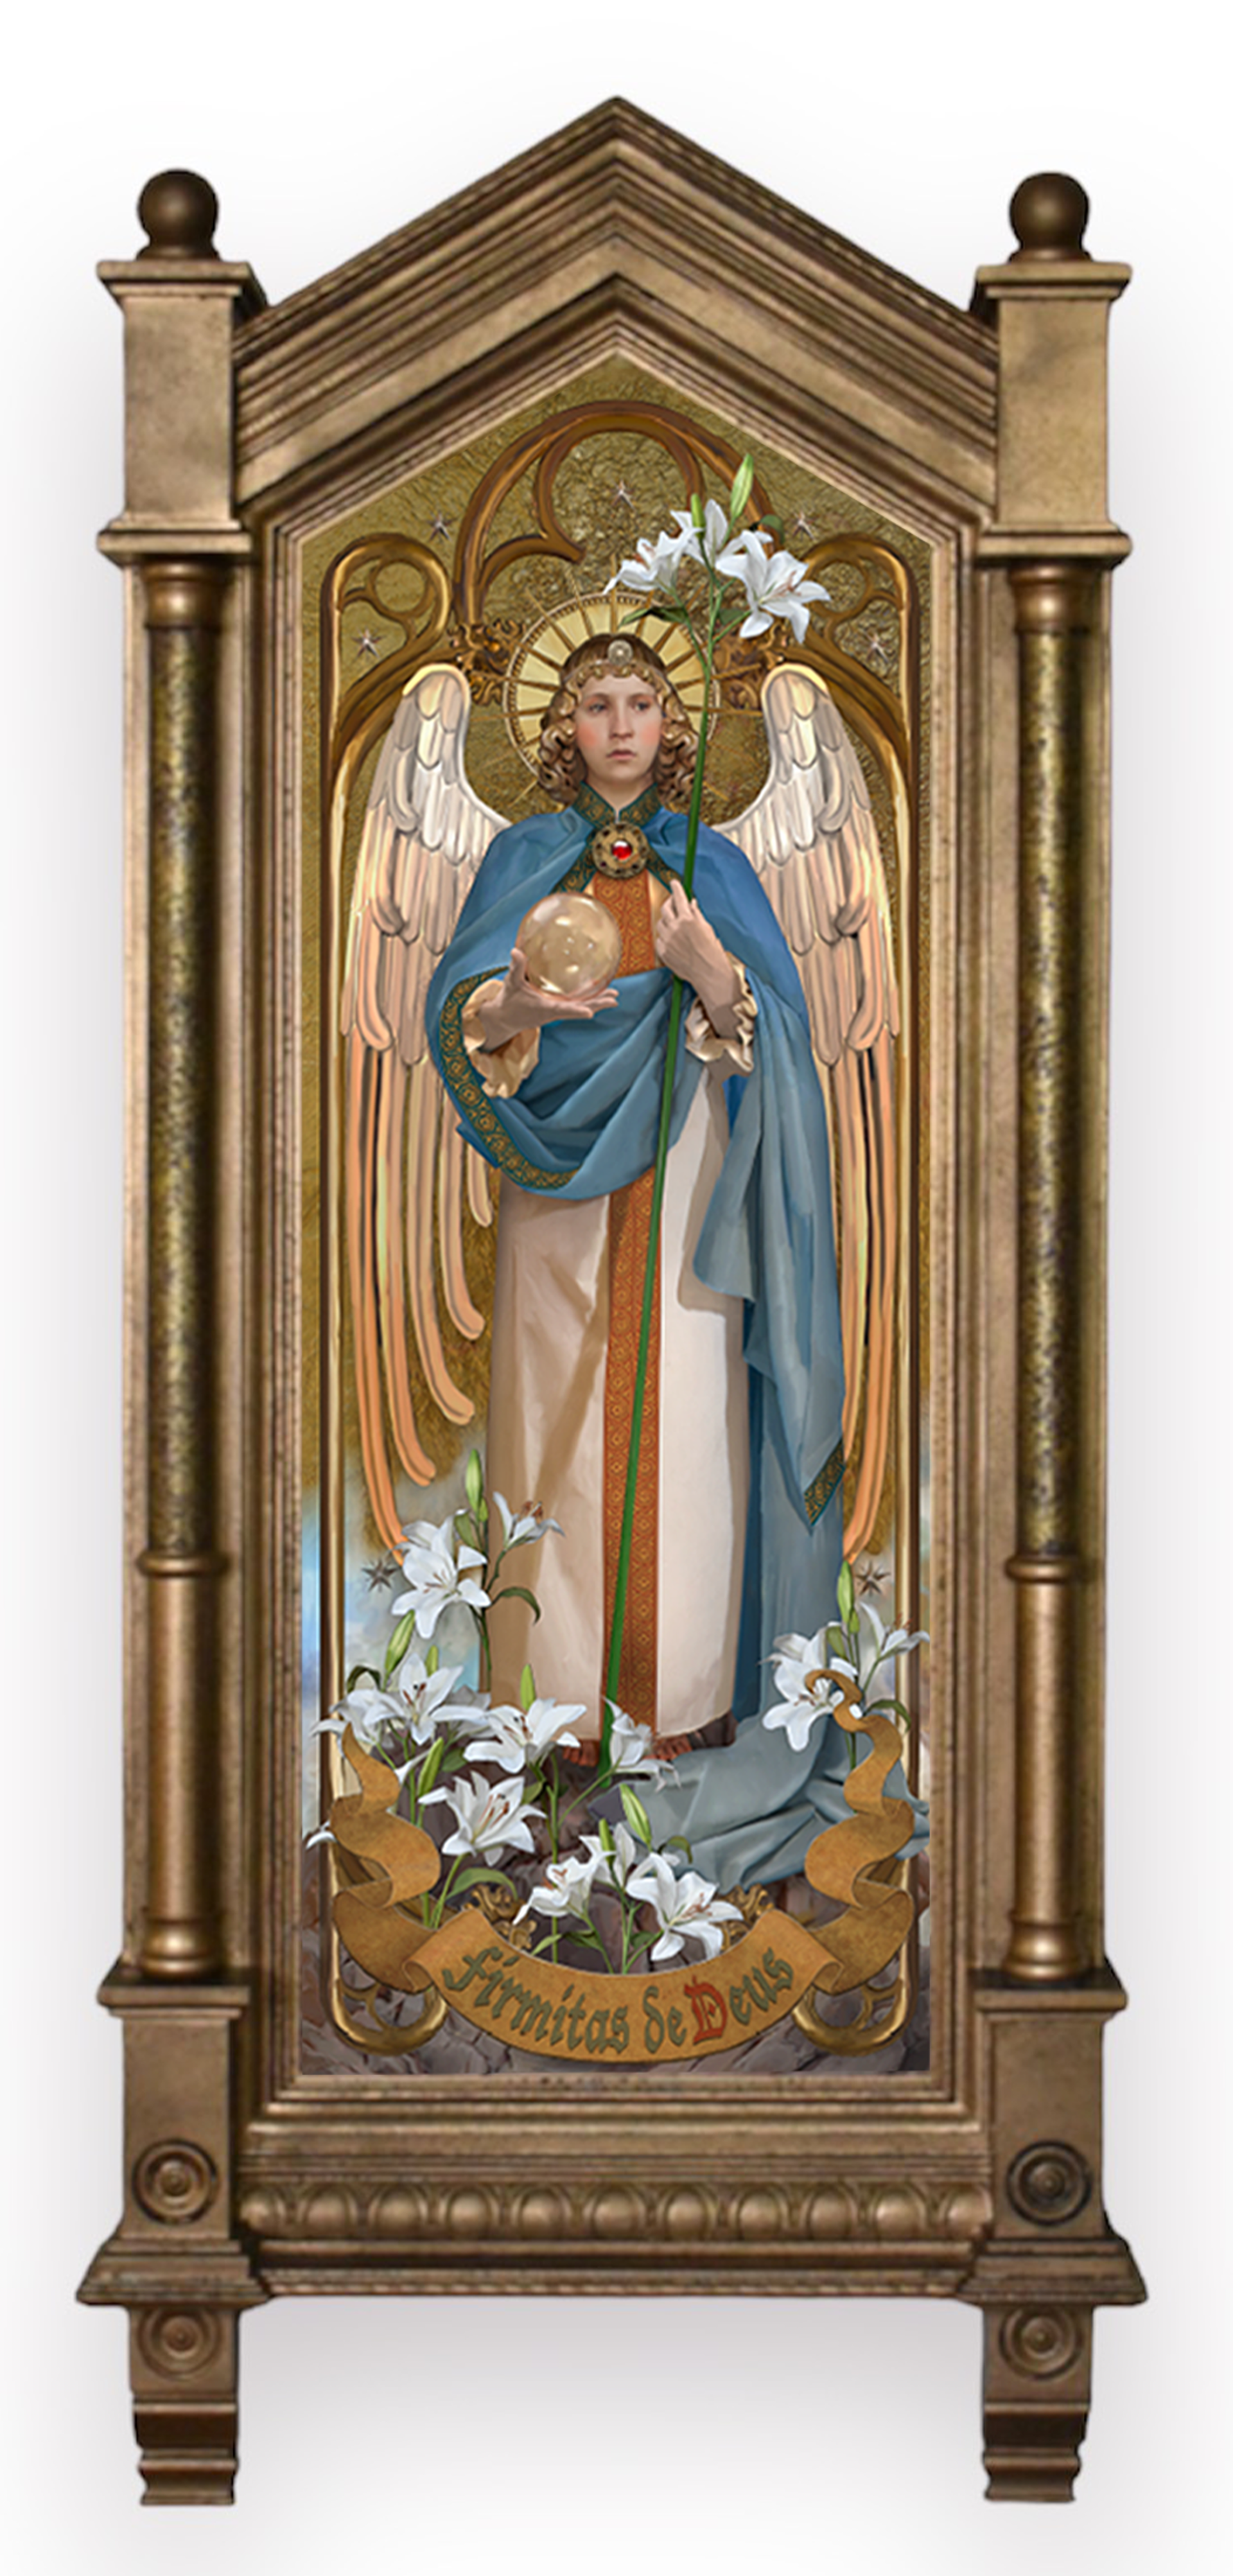 Archangel Gabriel by John Blumen